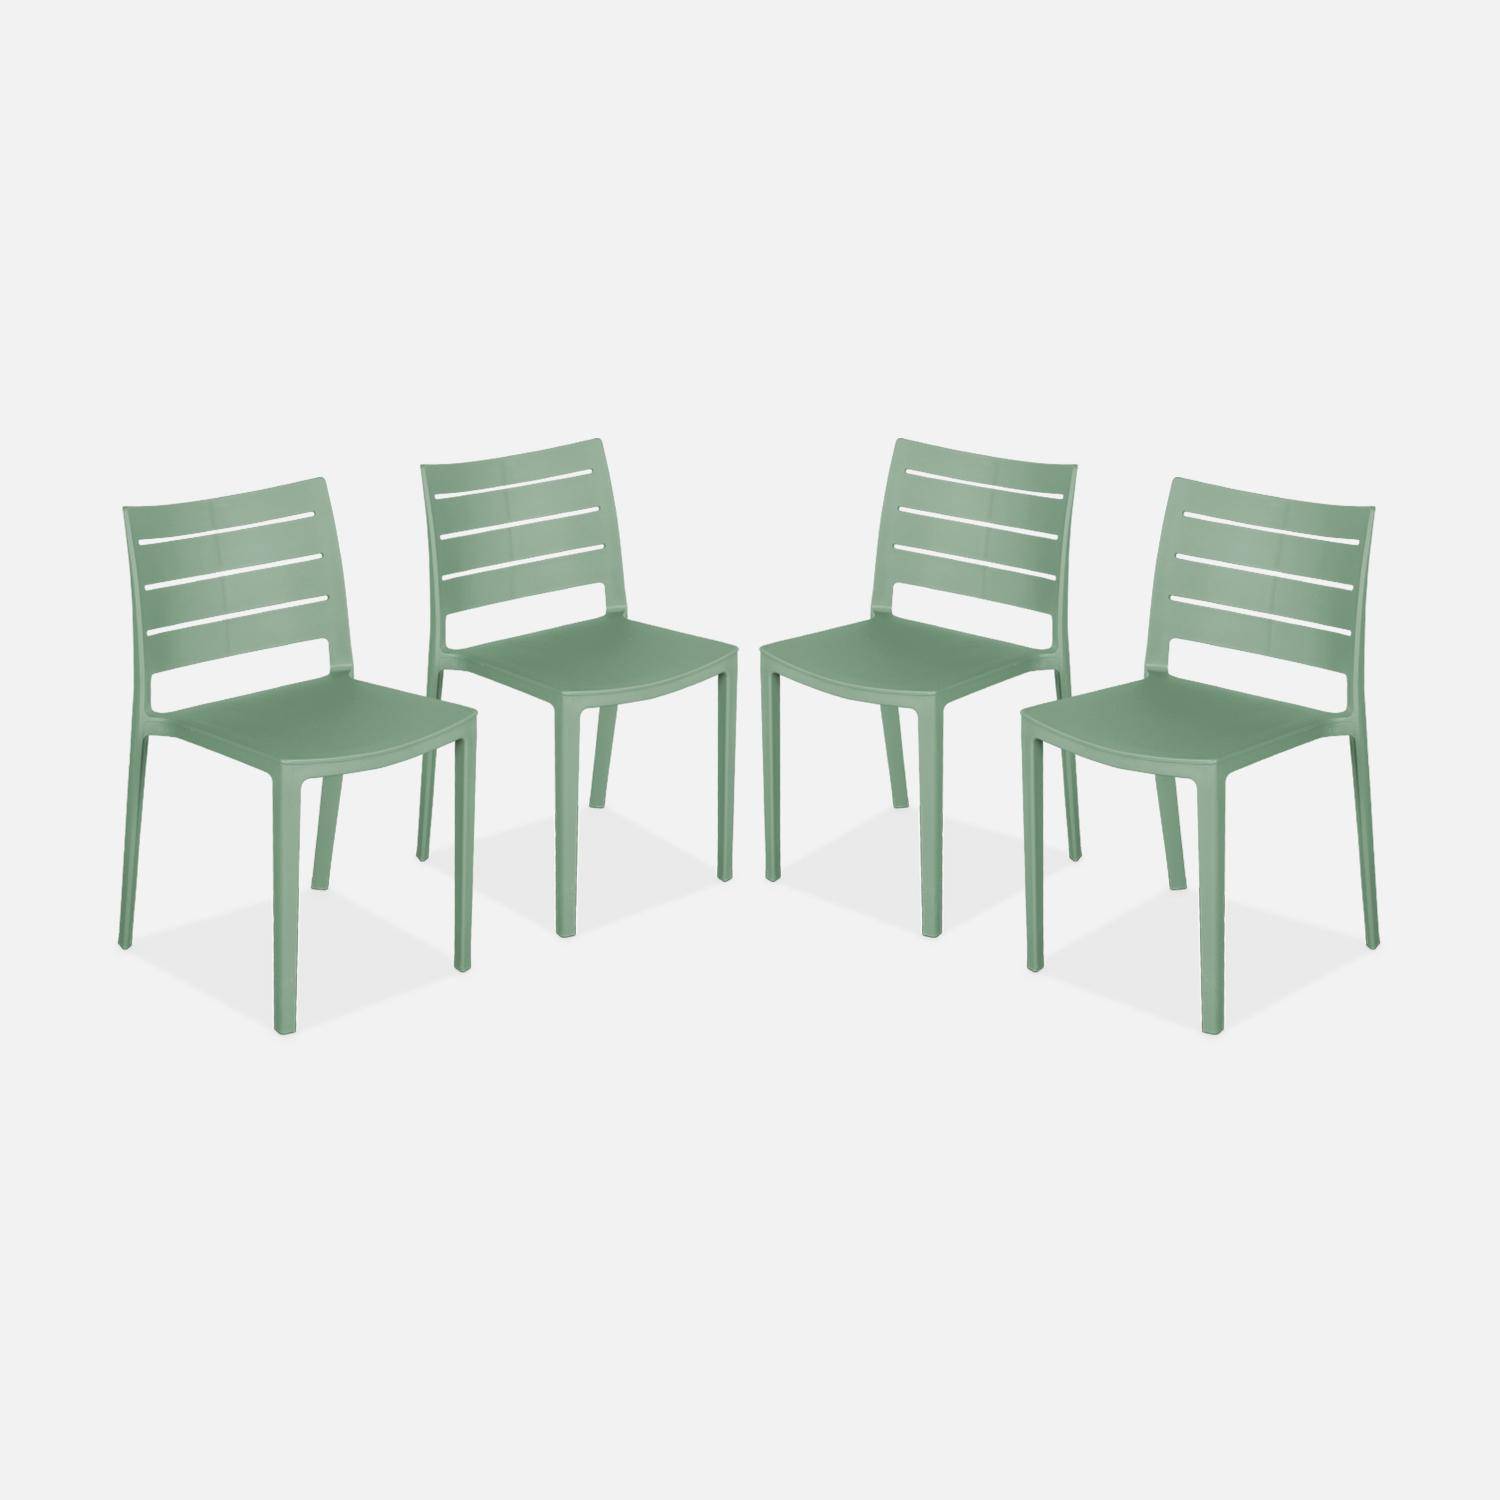 4er Set Gartenstühle aus graugrünem Kunststoff, stapelbar, bereits zusammengebaut - Jeanne Photo1